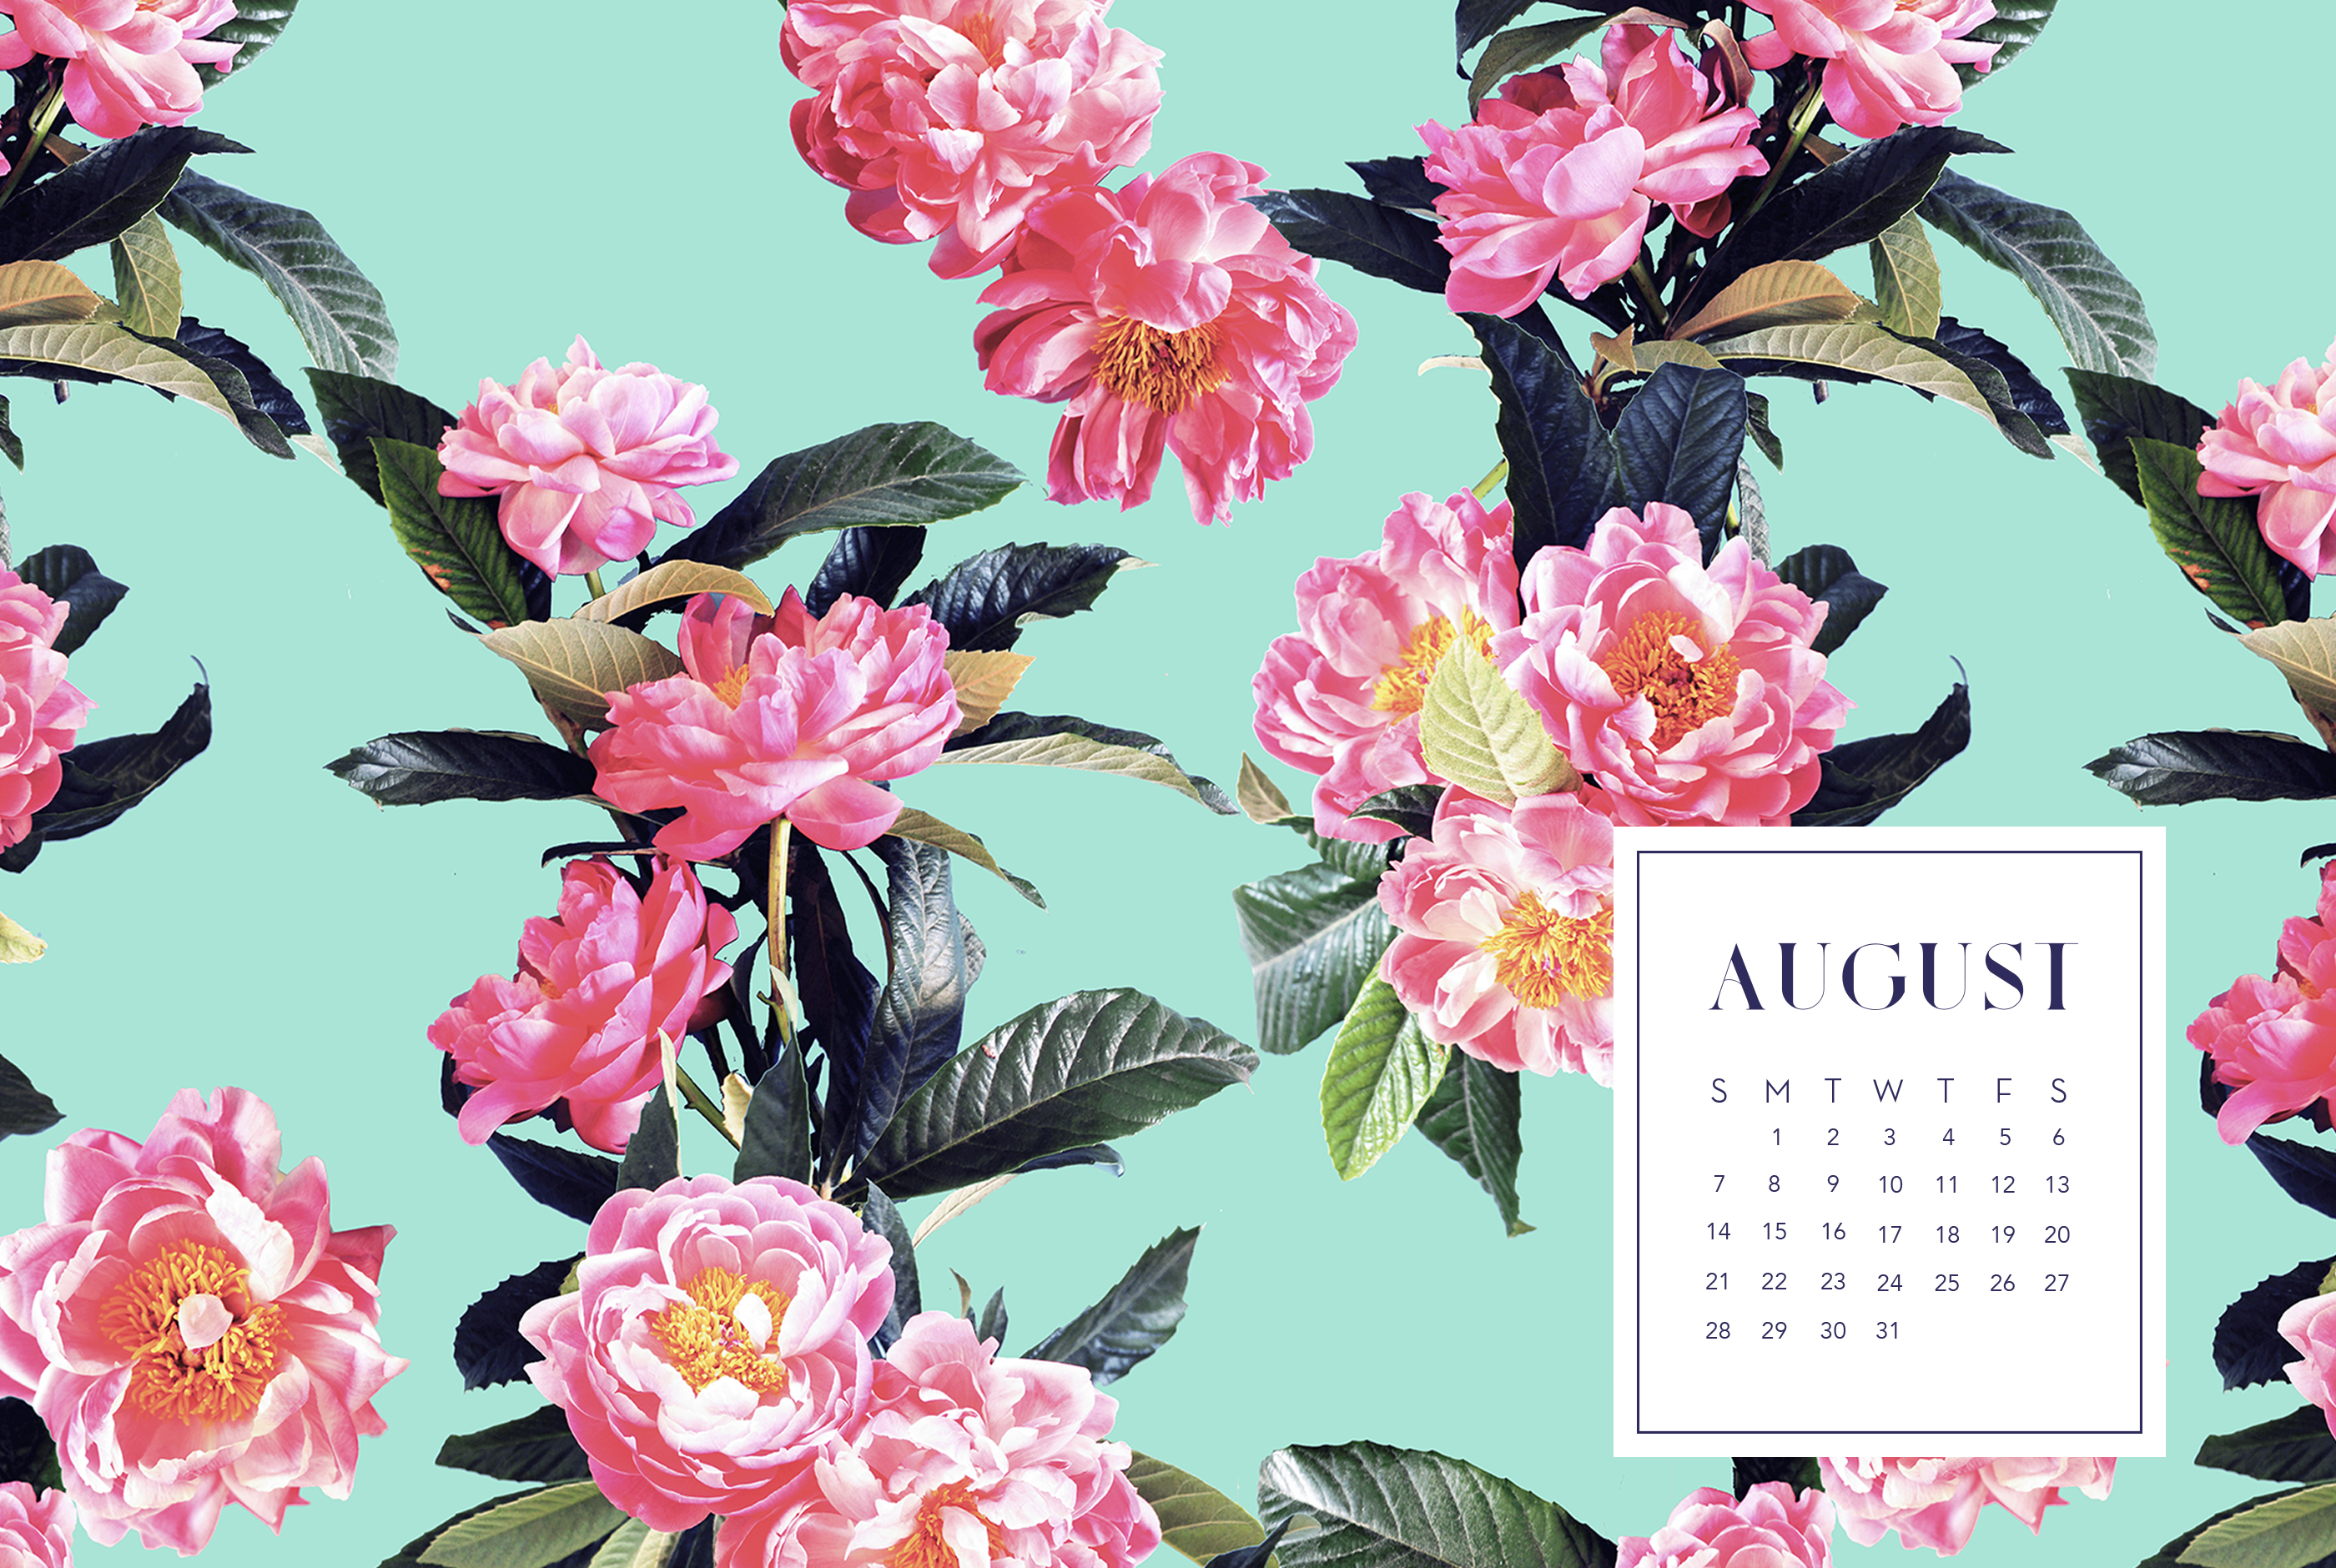 August 2016 Wallpapers - August 2017 Calendar Desktop Background - HD Wallpaper 